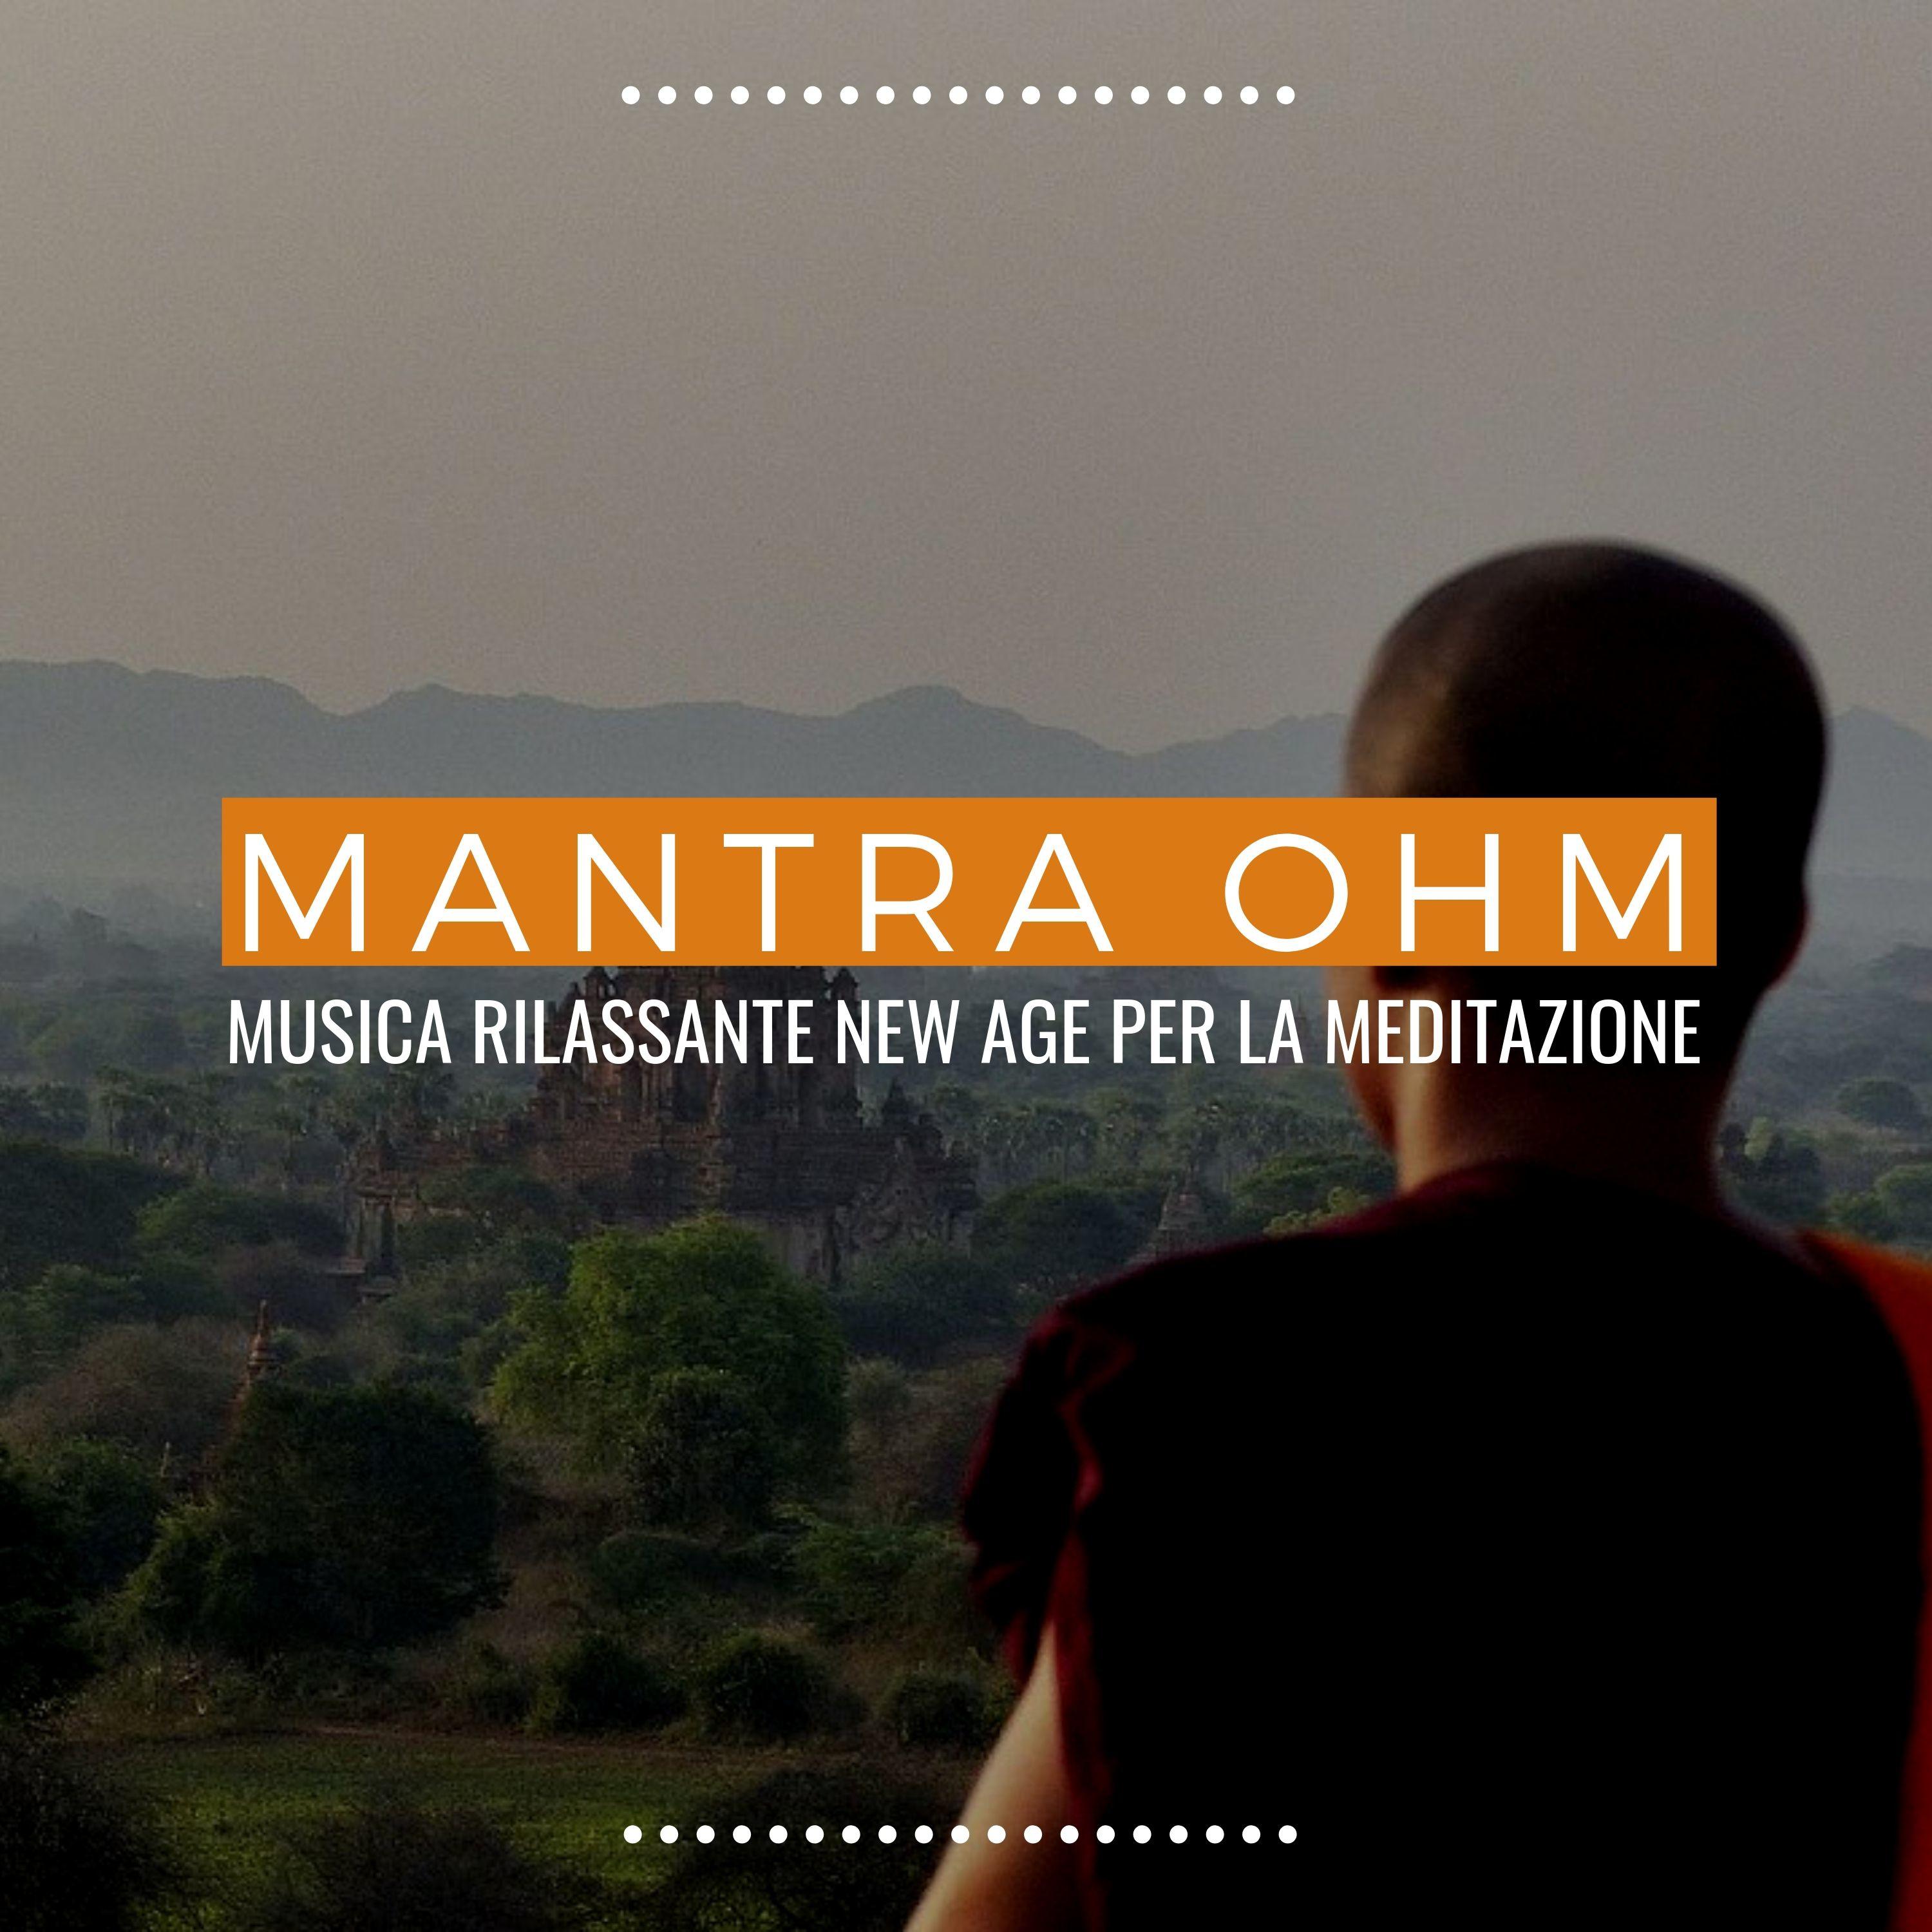 Mantra ohm: musica rilassante new age per la meditazione, suoni della natura